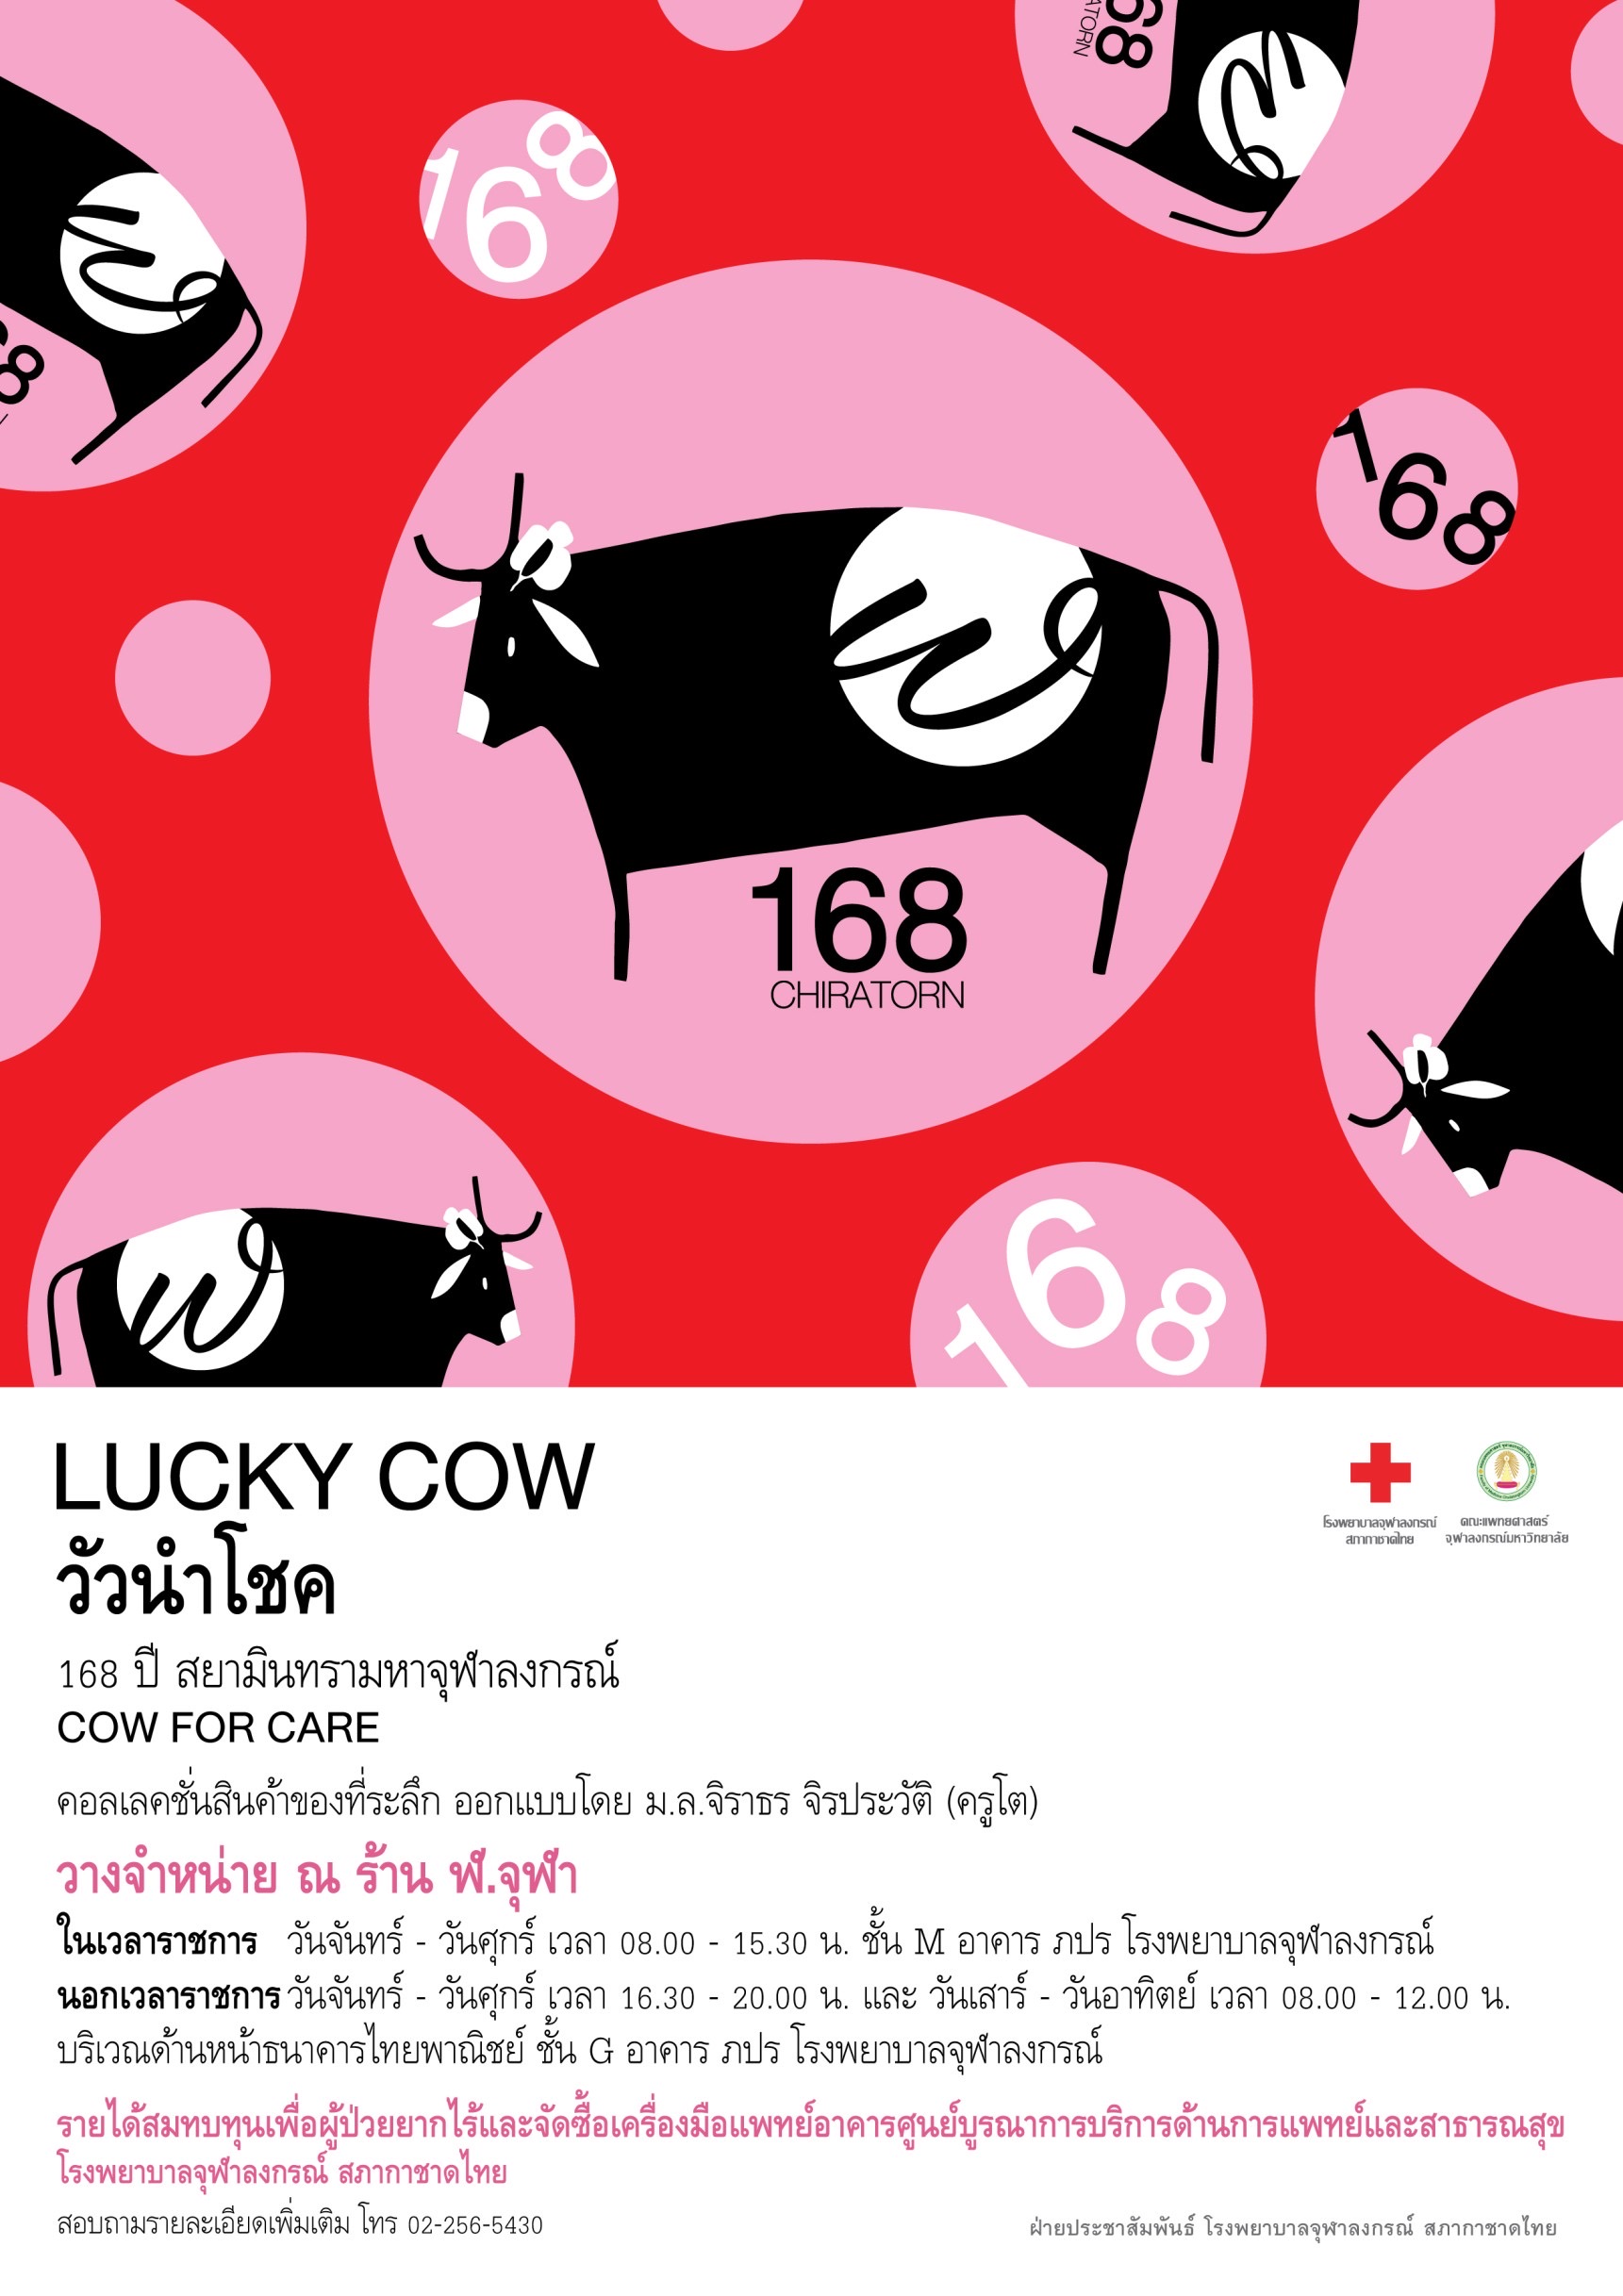 LUCKY COW วัวนำโชค 168 ปี สยามินทรามหาจุฬาลงกรณ์ COW FOR CARE คอลเลคชั่นสินค้าของที่ระลึก ออกแบบโดย ม.ล.จิราธร จิรประวัติ (ครูโต)